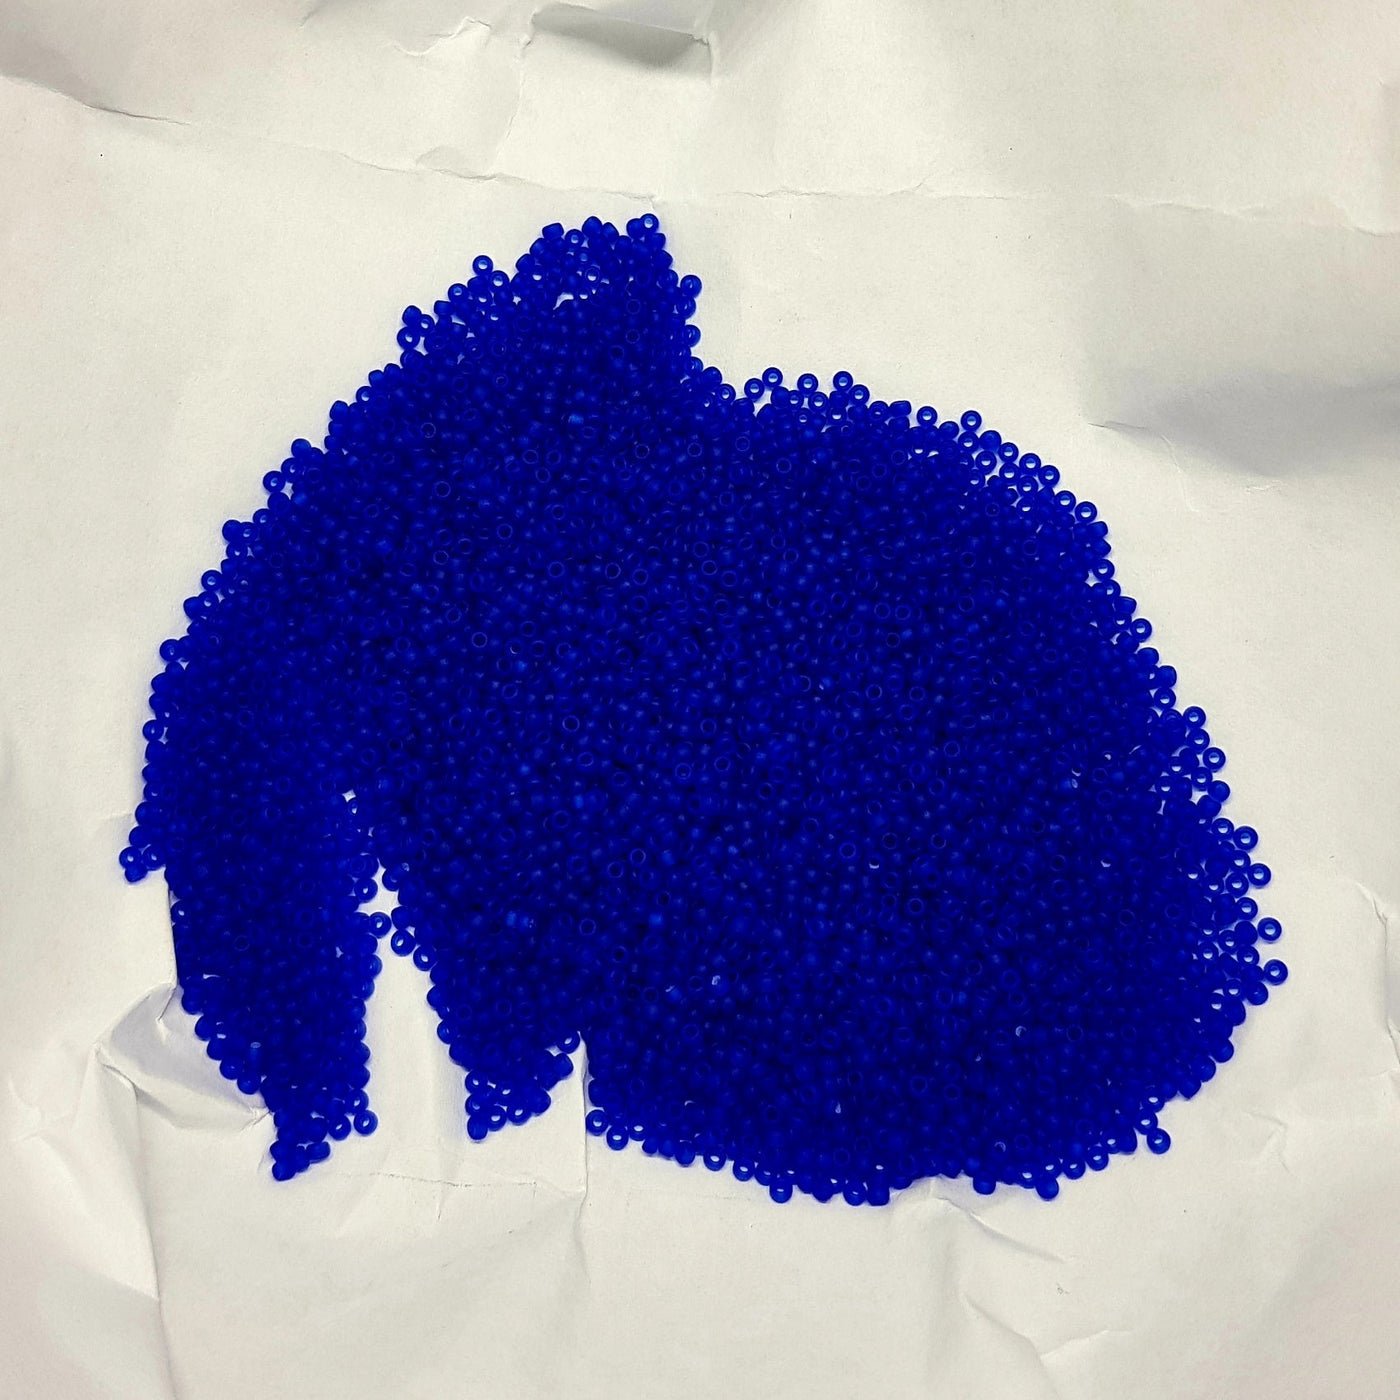 חרוזי מיוקי יפניים, גודל 15 - קטן ביותר (1.5 מ"מ) חור פנימי 0.7 מ"מ בצבע כחול מט